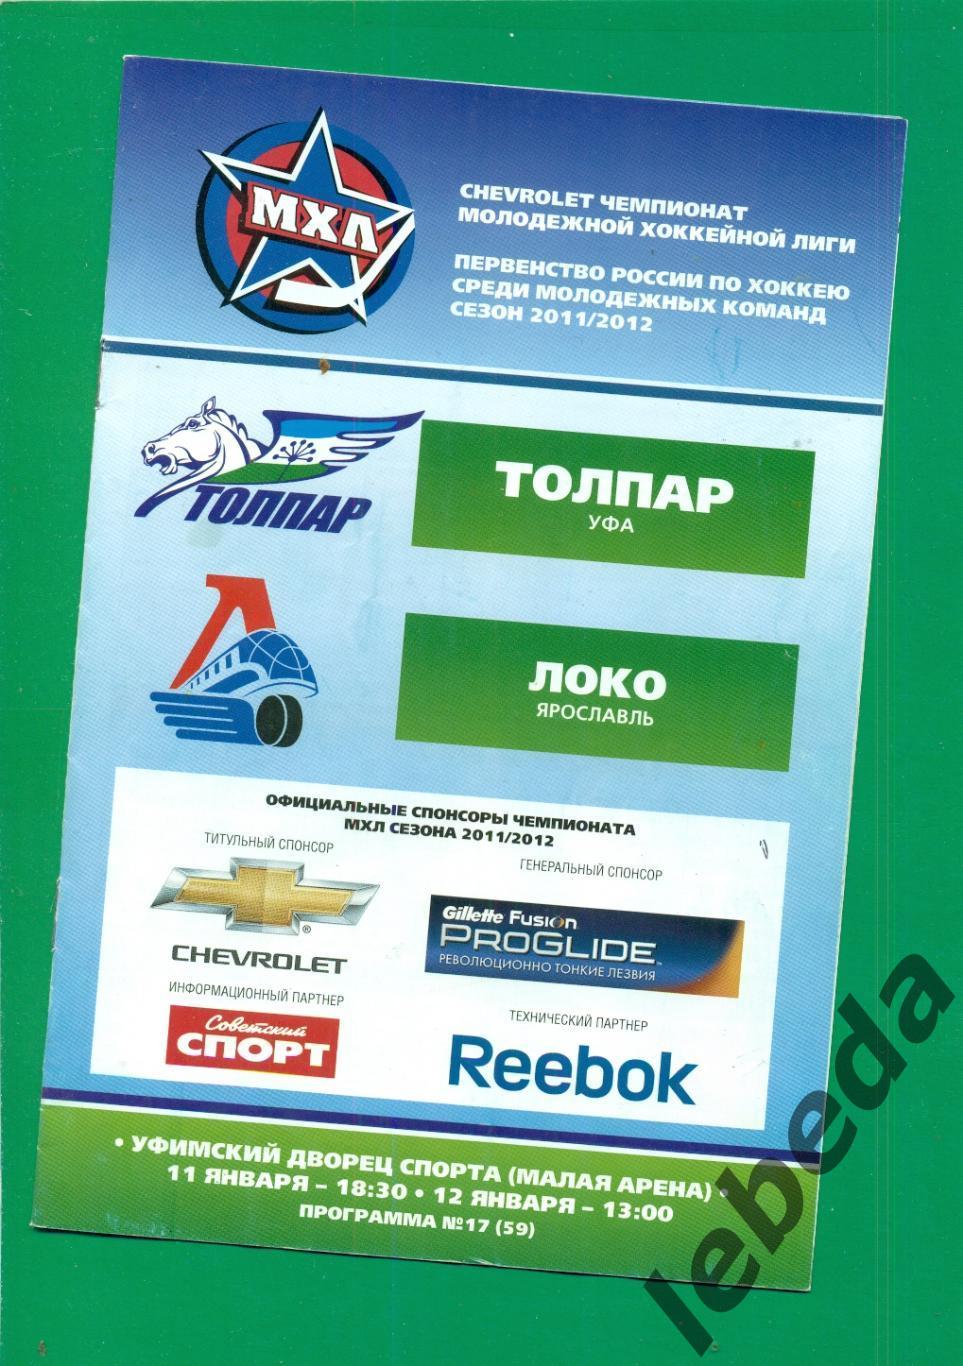 Толпар (Уфа) - Локо Ярославль - 2011 / 2012 г. ( 11-12.01.2012.)